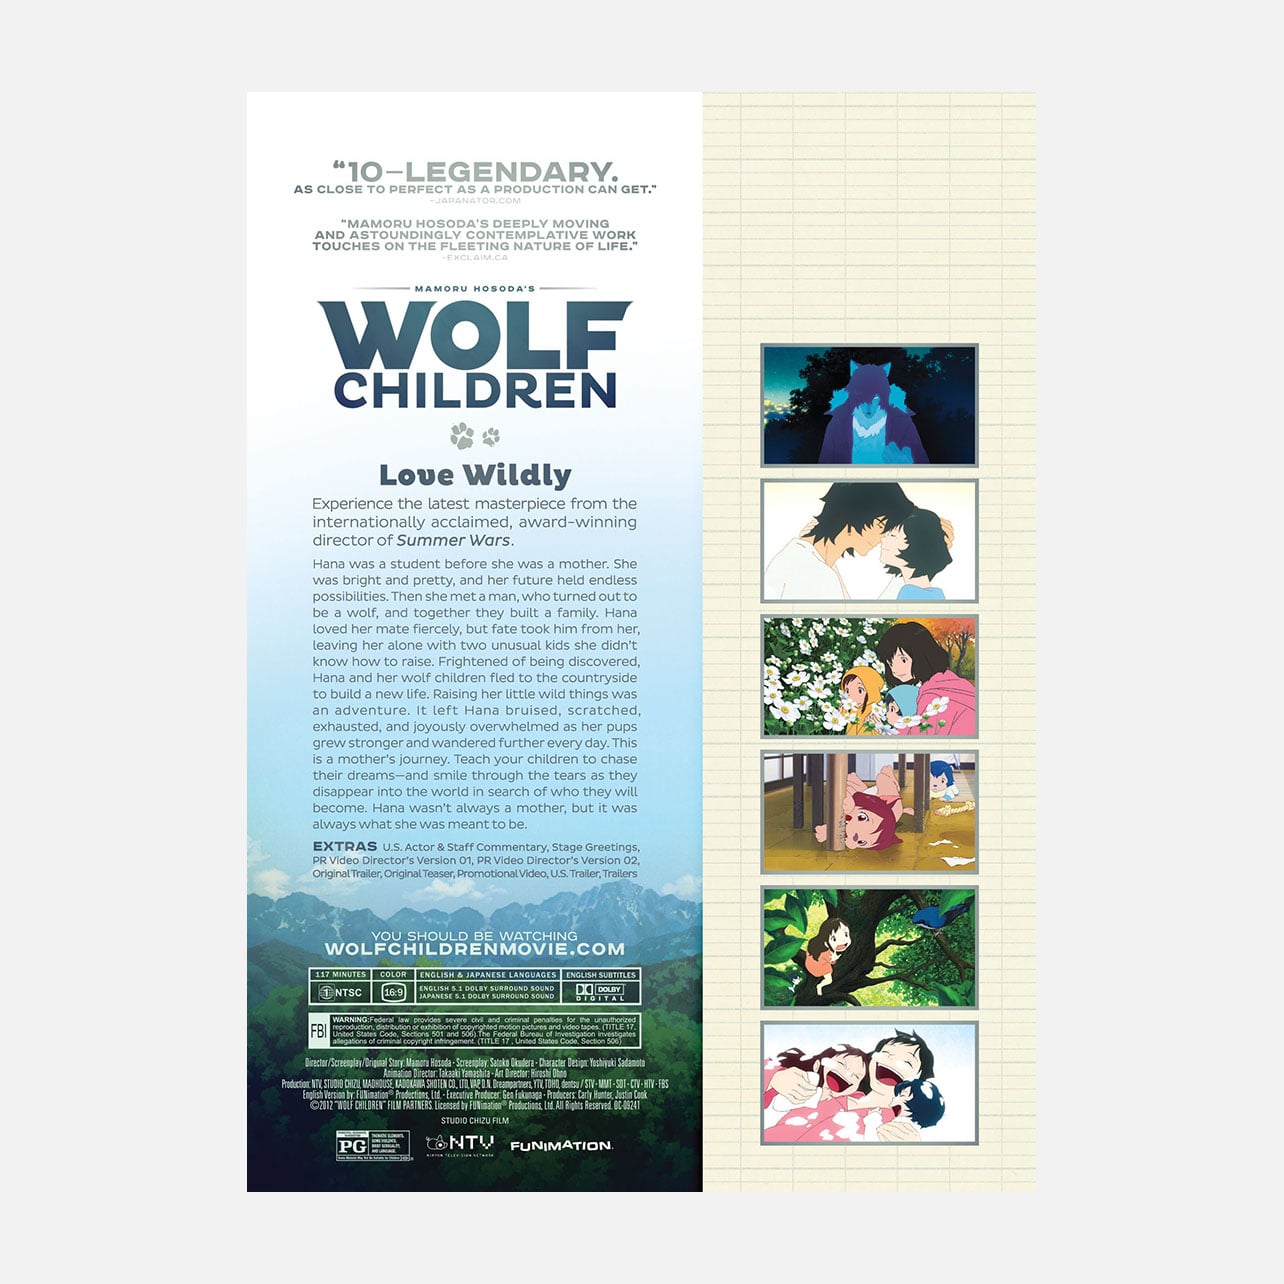 WOLF CHILDREN - MOVIE image count 1